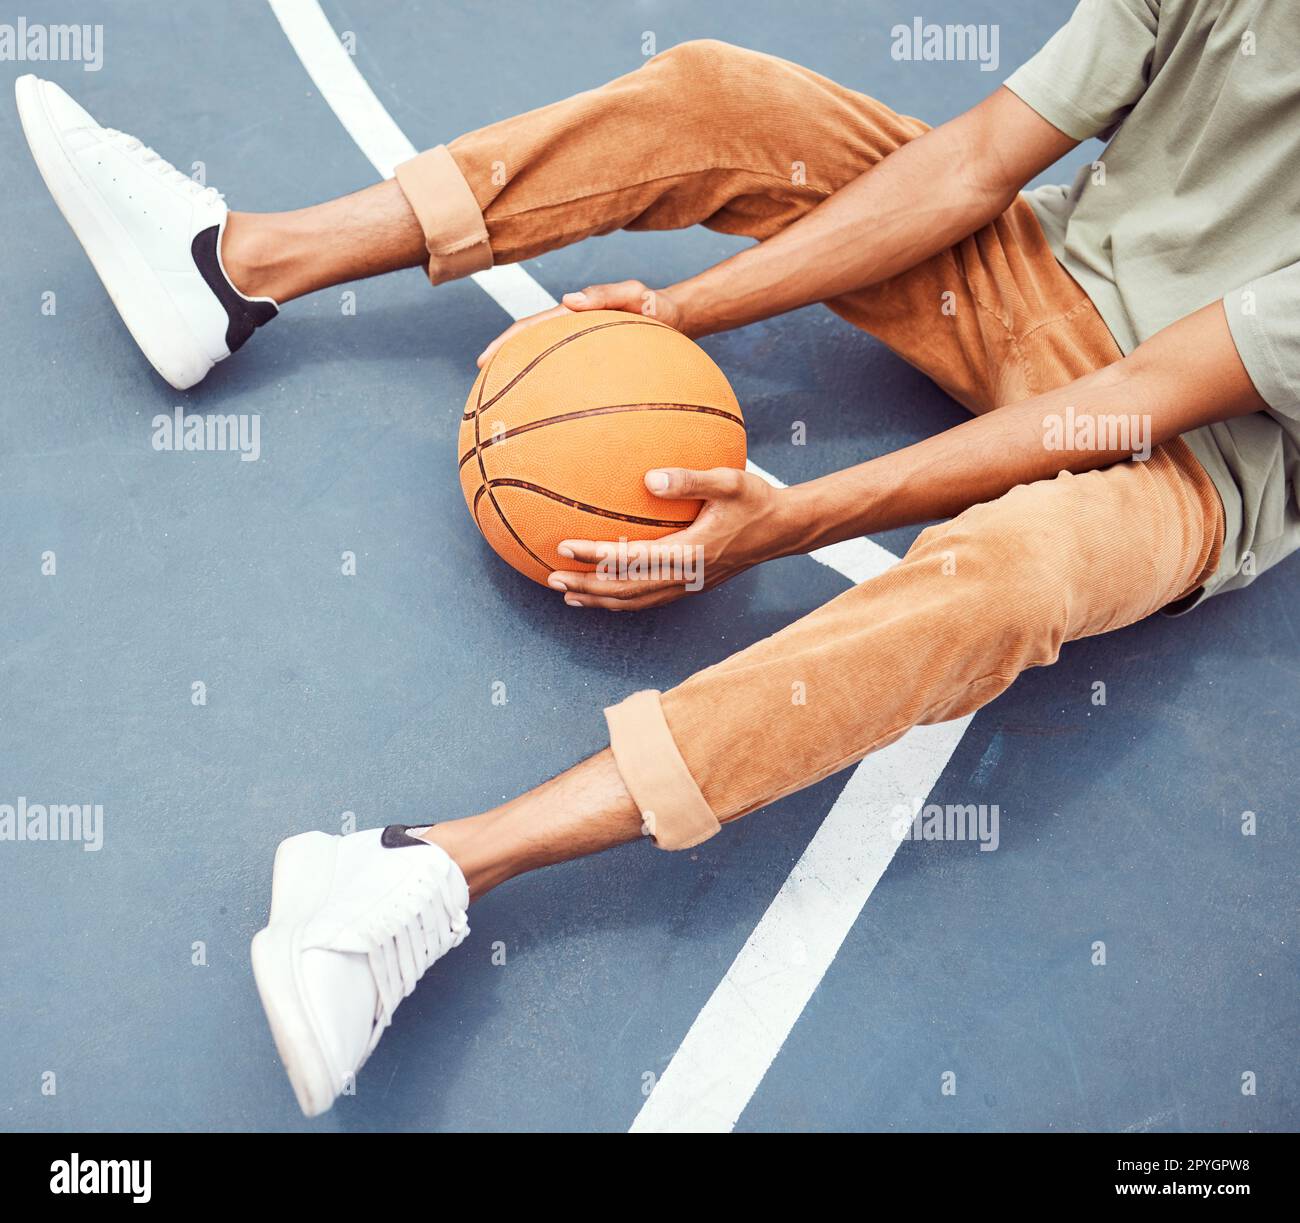 Basket-ball, mains et fitness avec un homme sportif assis seul sur un terrain, tenant une balle d'en haut. Terrain de basket-ball, pause et exercice avec un joueur de basket-ball masculin ou un athlète se reposant à l'entraînement Banque D'Images